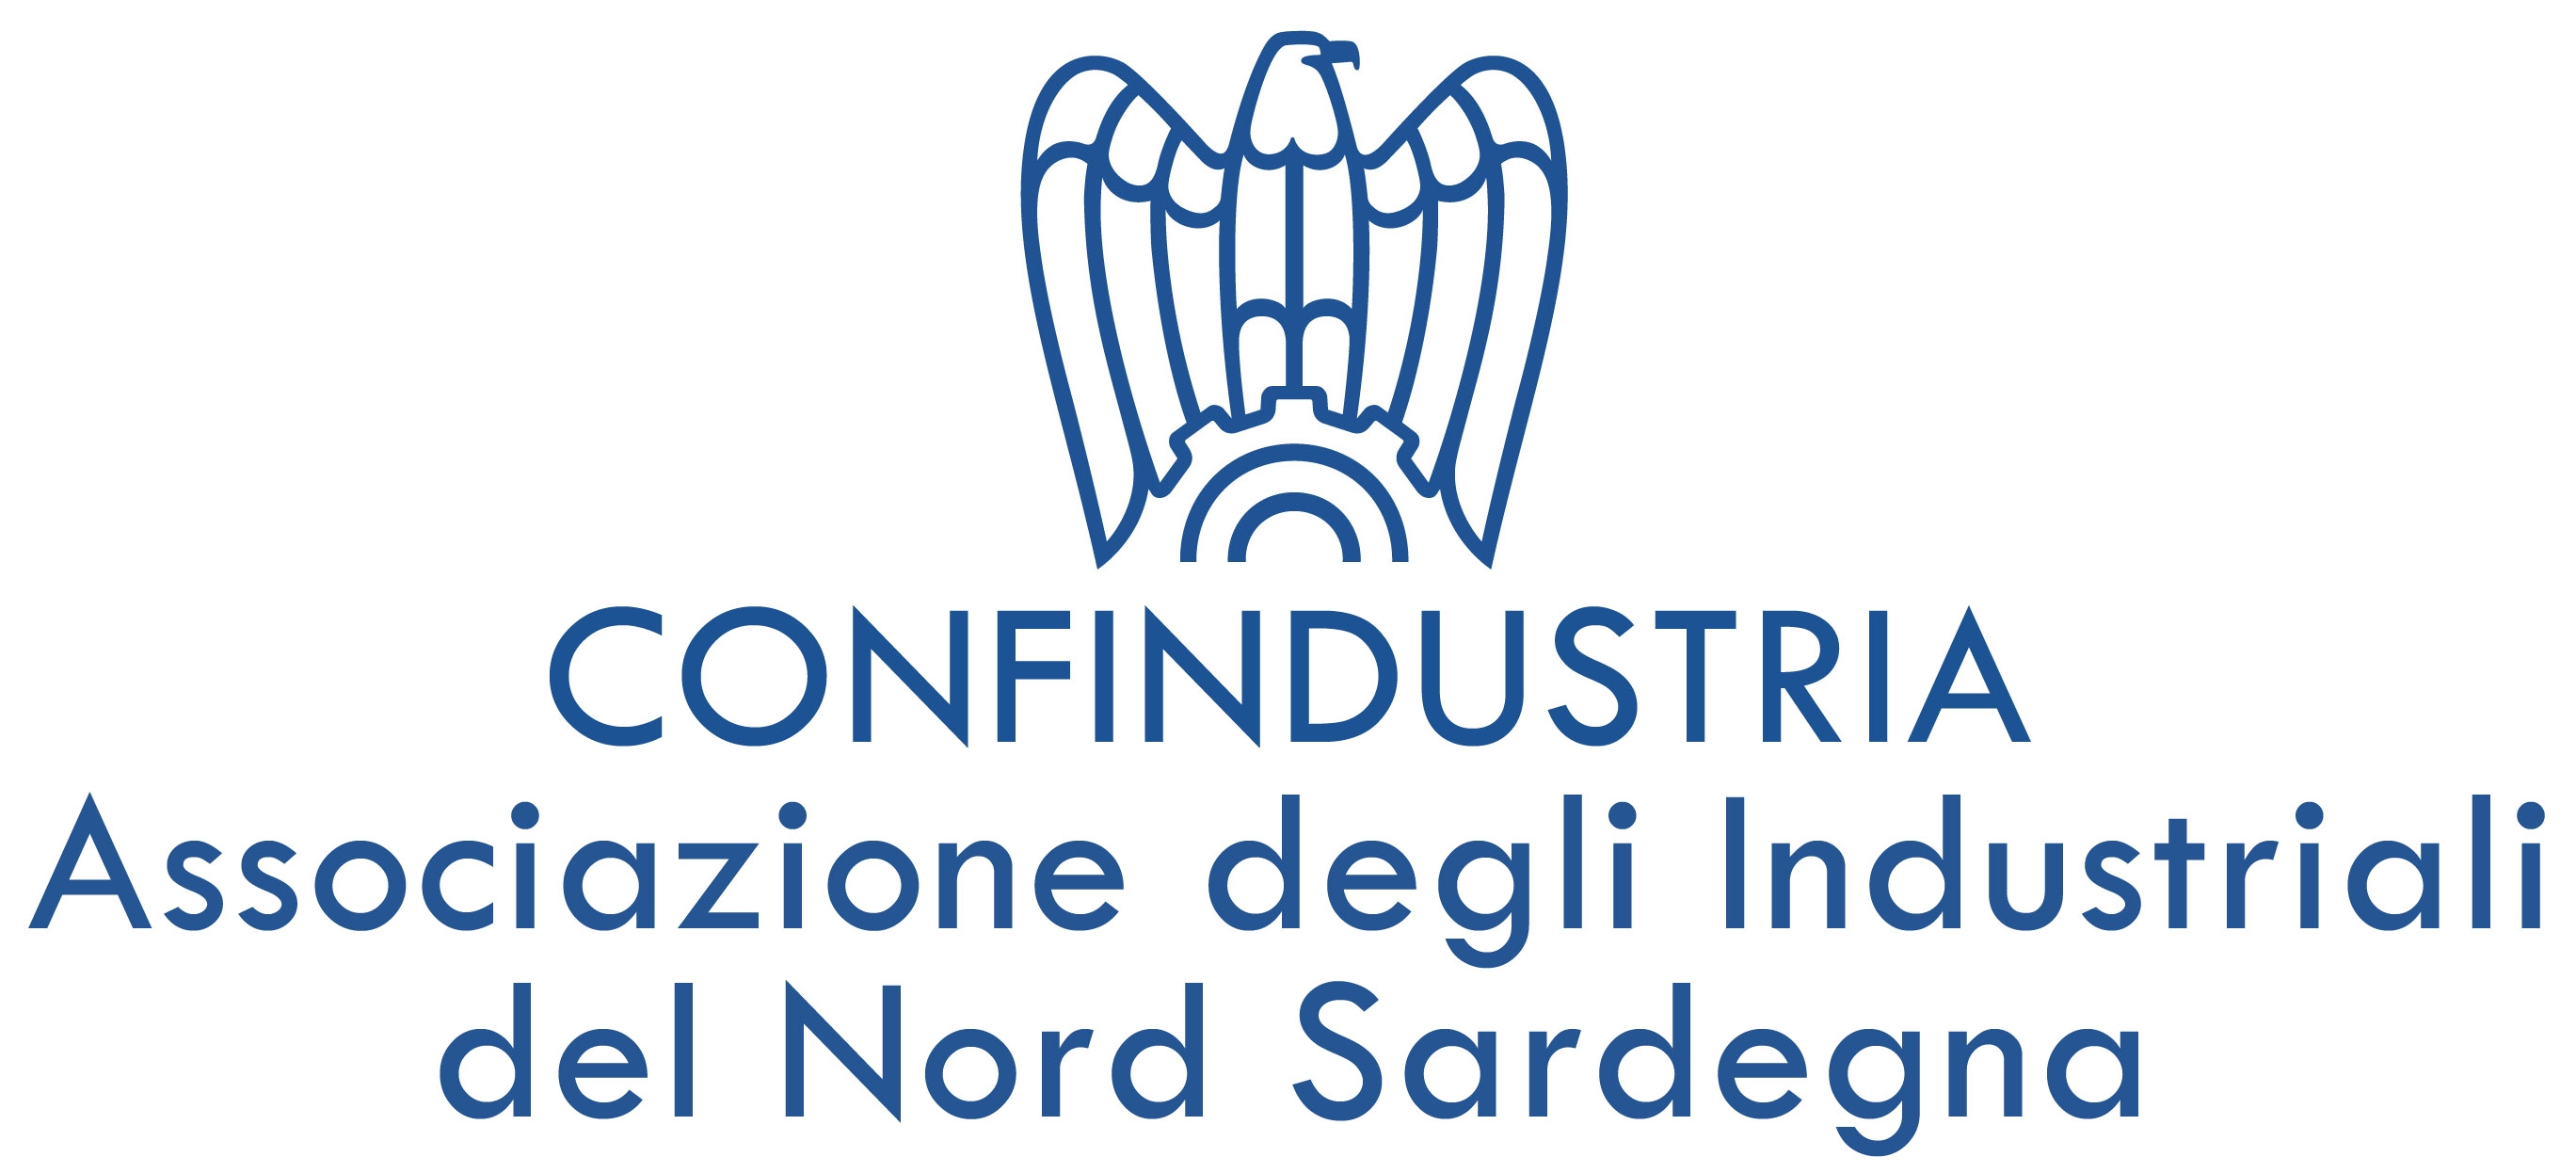 Confindustria del Nord Sardegna